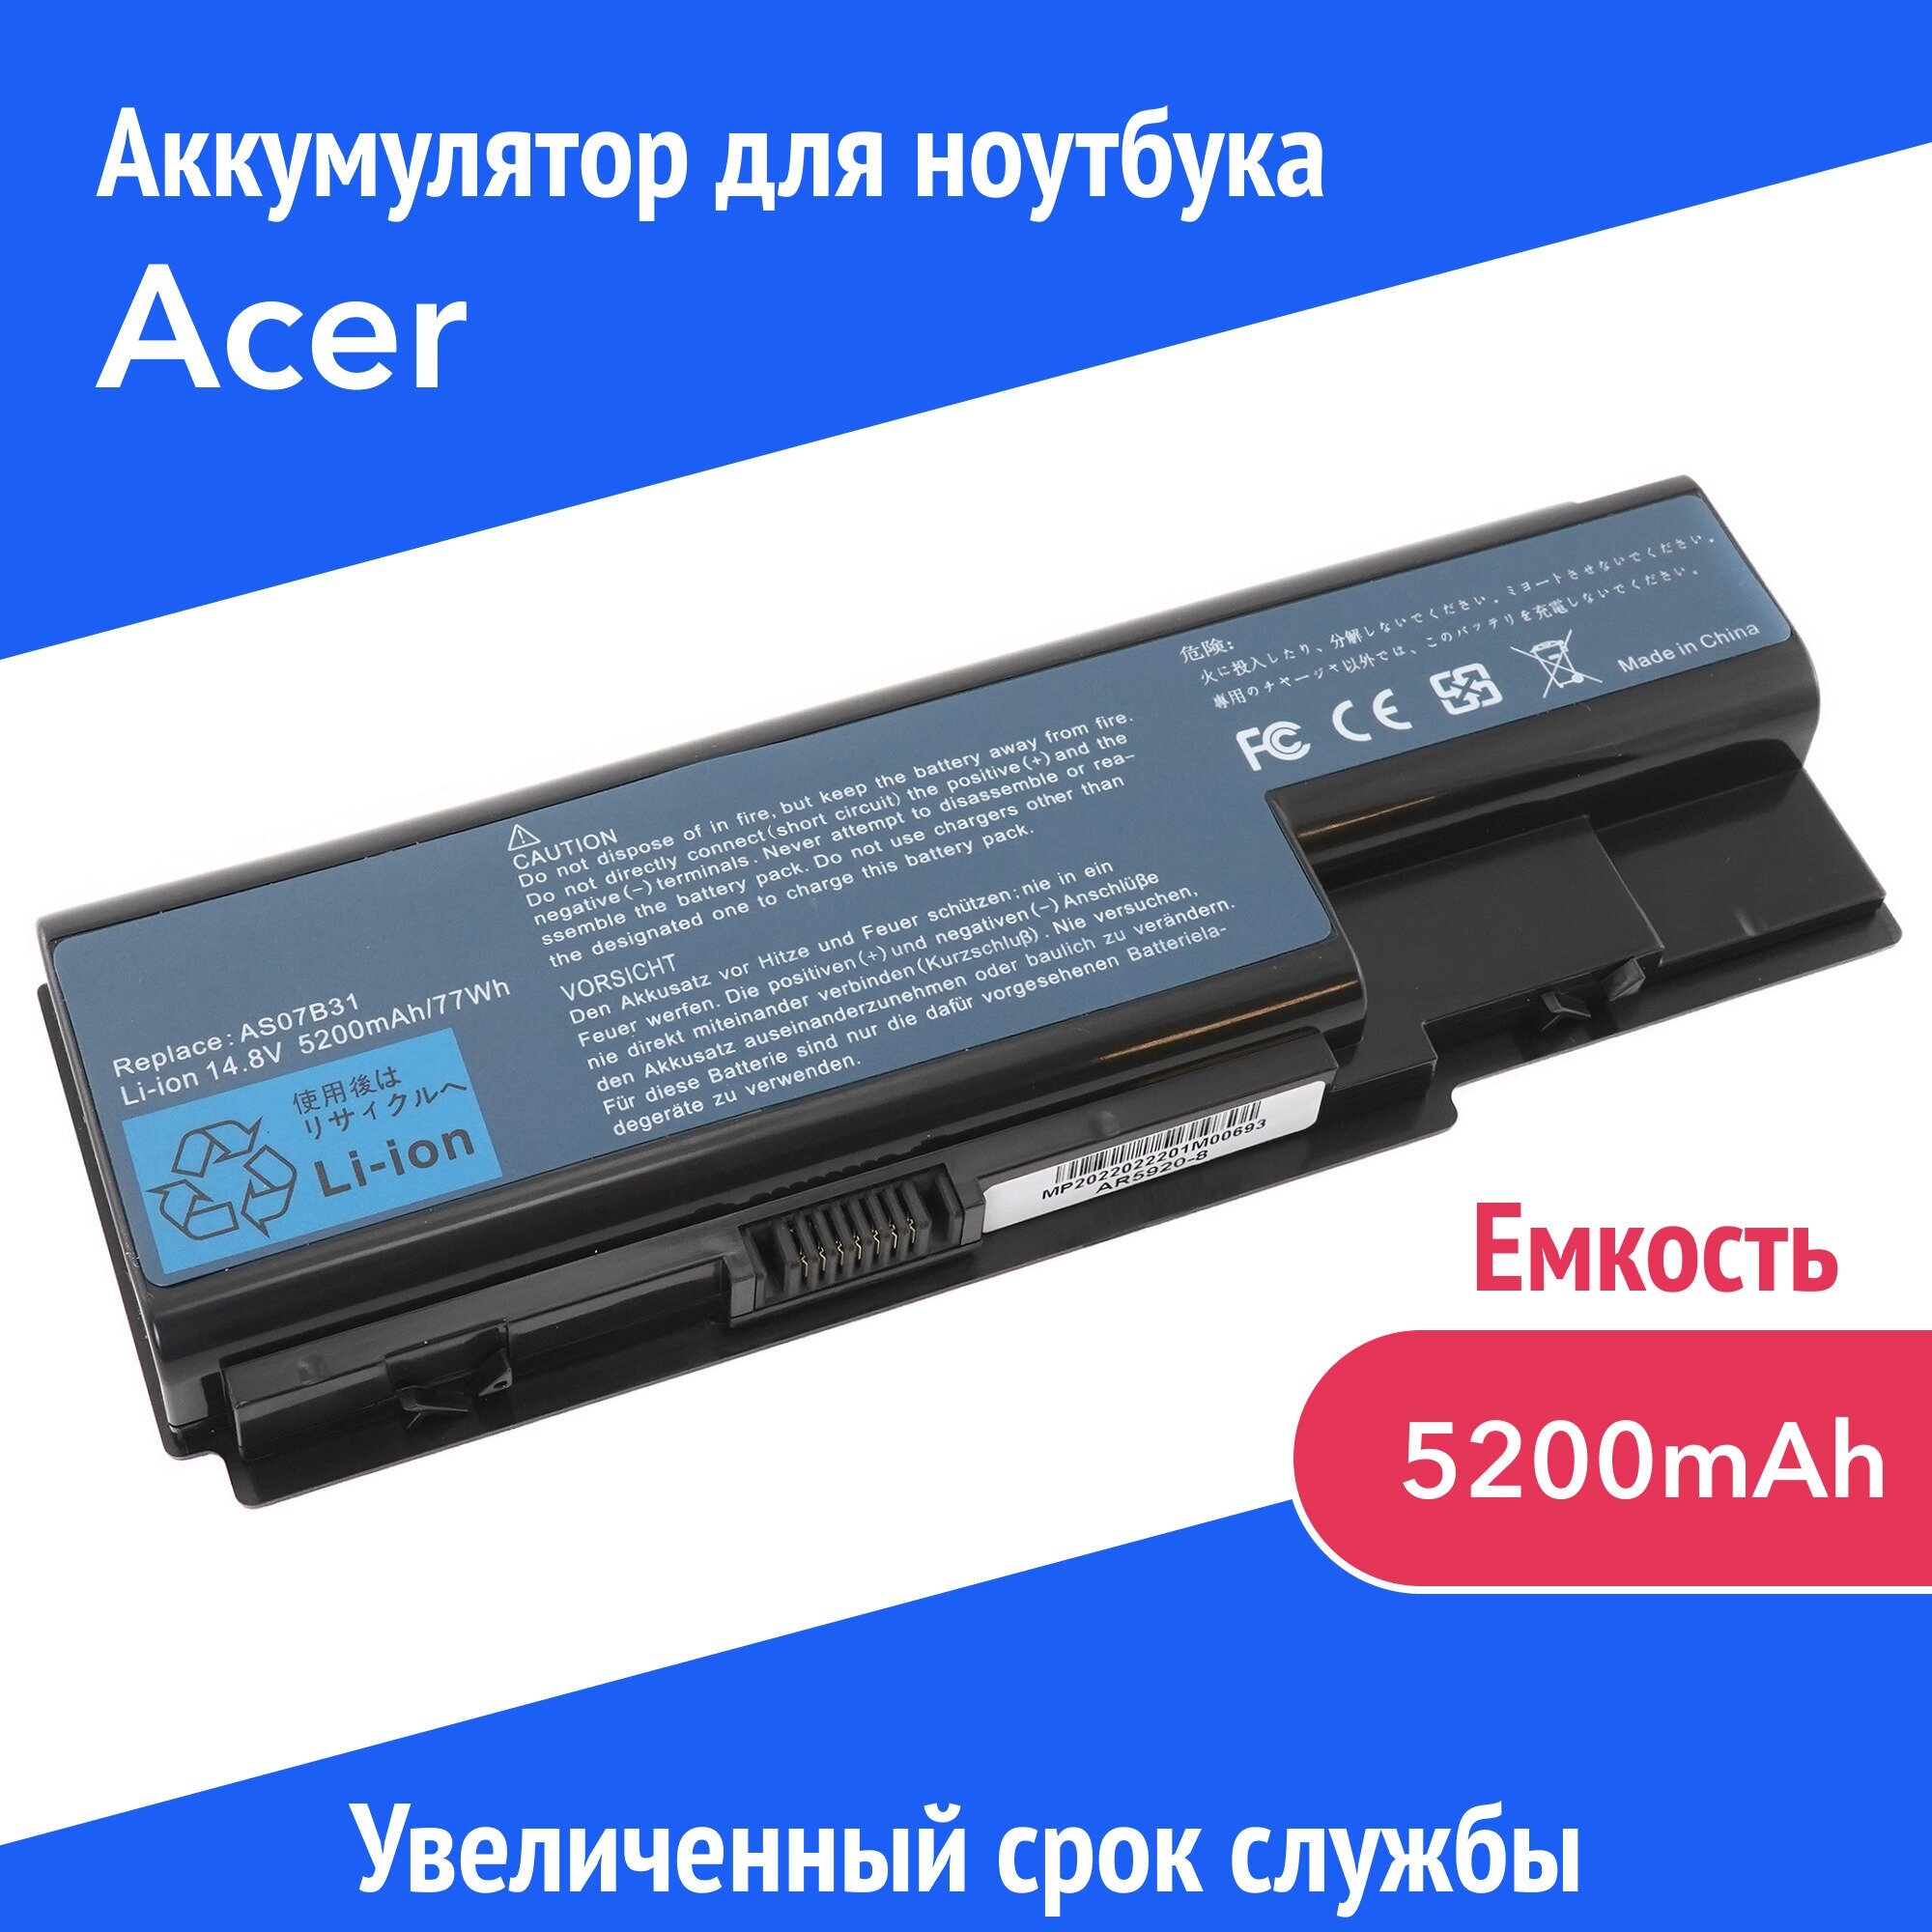 Аккумулятор AS07B31 для Acer Aspire 5220G / 5710G / 6530G (AS07B52 JDW50 MS2221) 14.8V